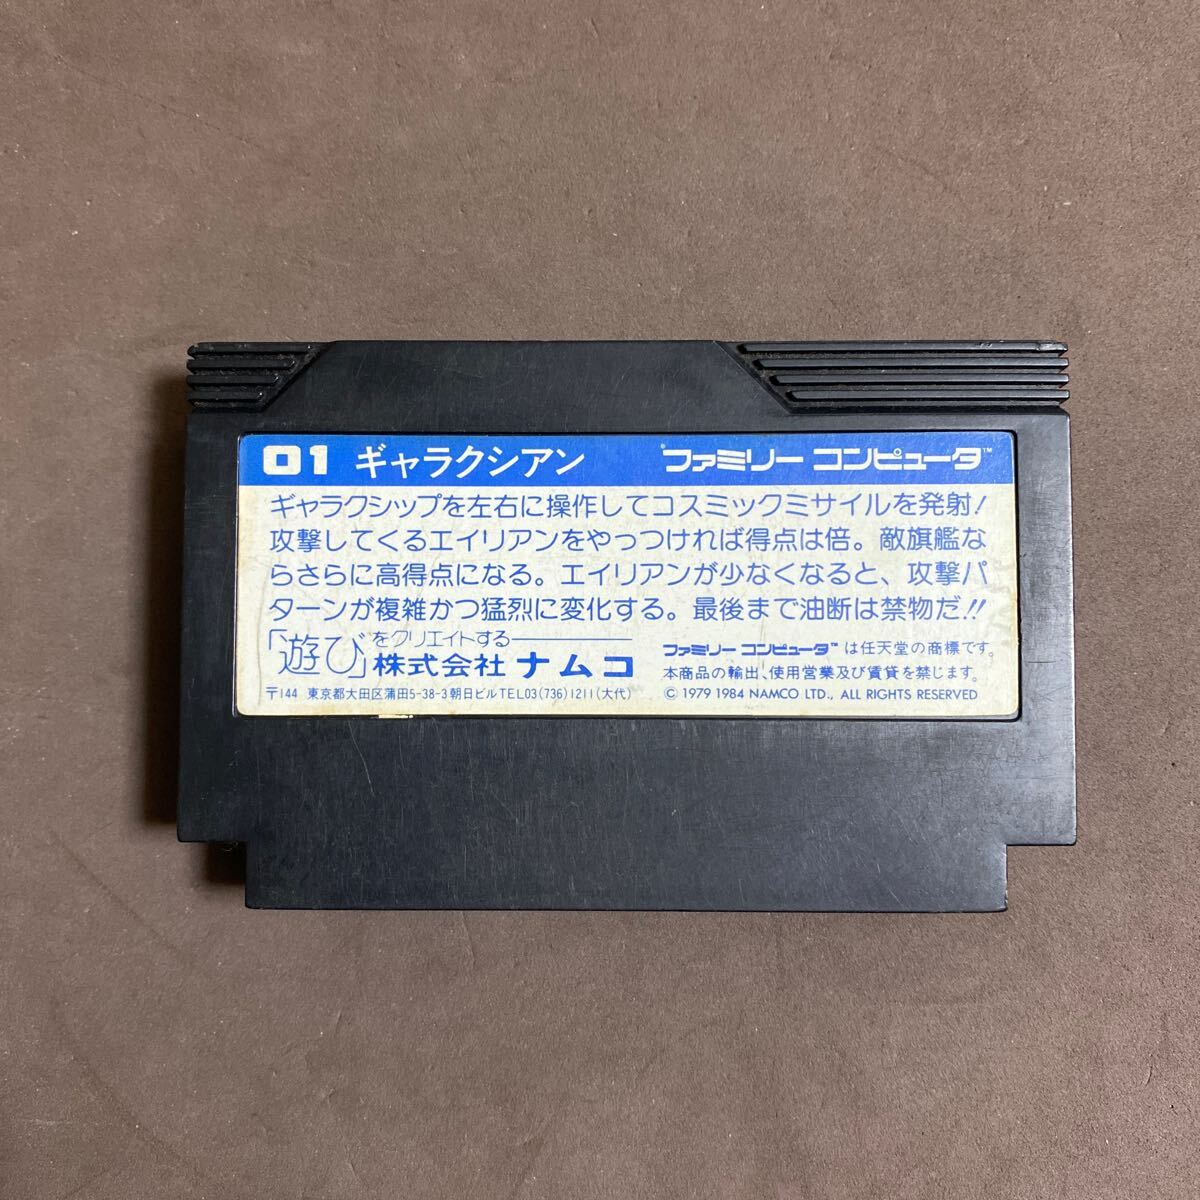  коробка мнение имеется Famicom soft гарантия k Cyan 